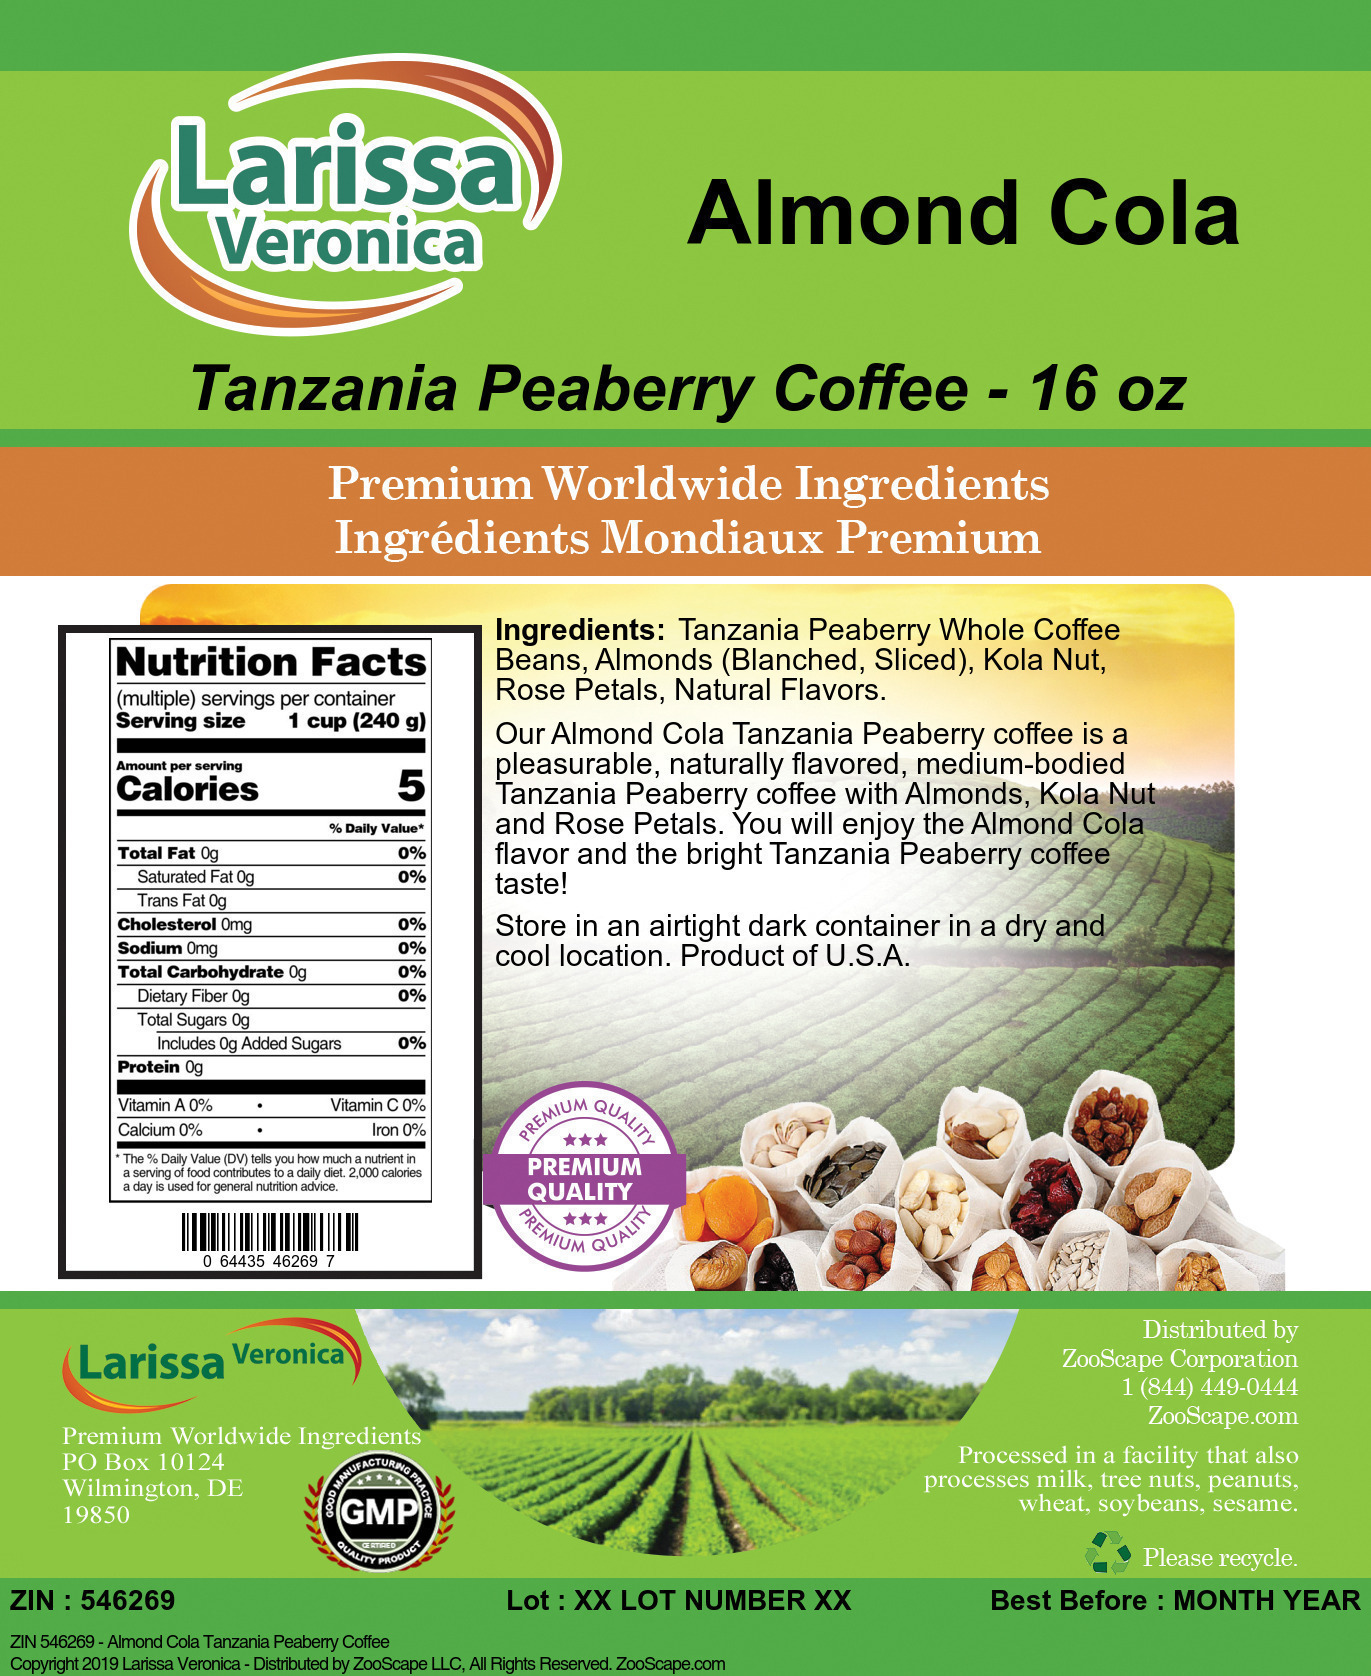 Almond Cola Tanzania Peaberry Coffee - Label